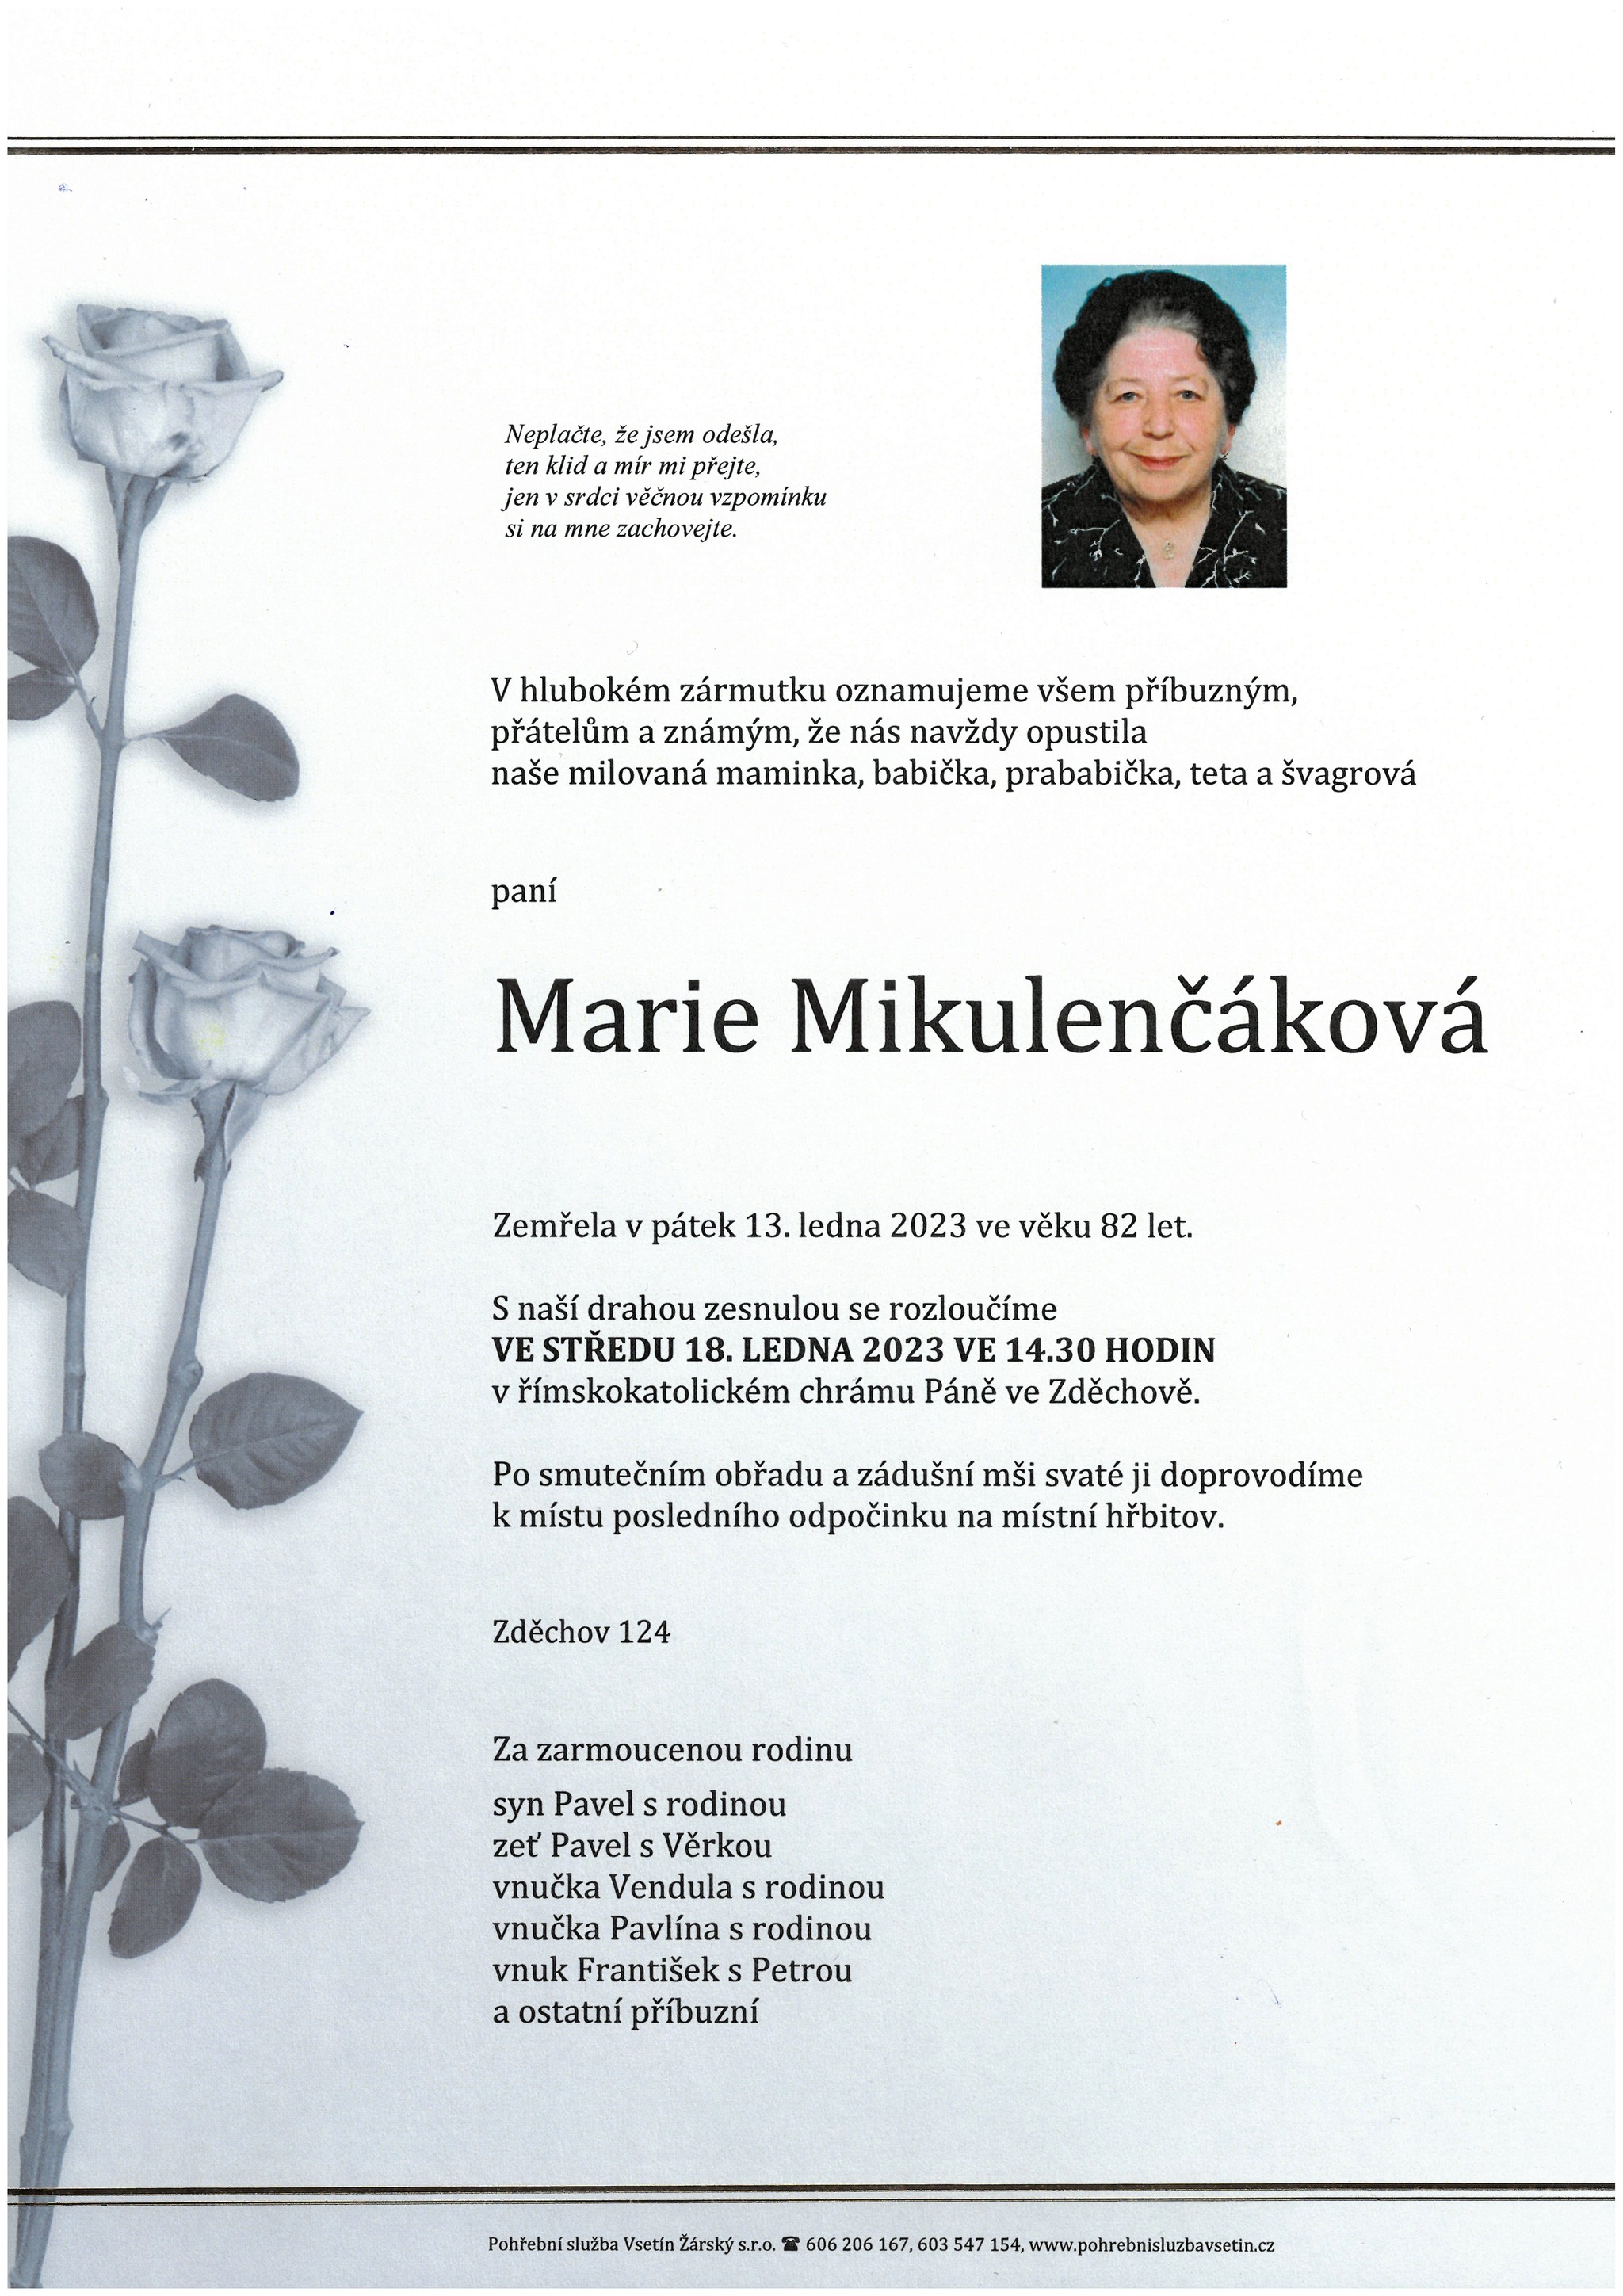 Marie Mikulenčáková